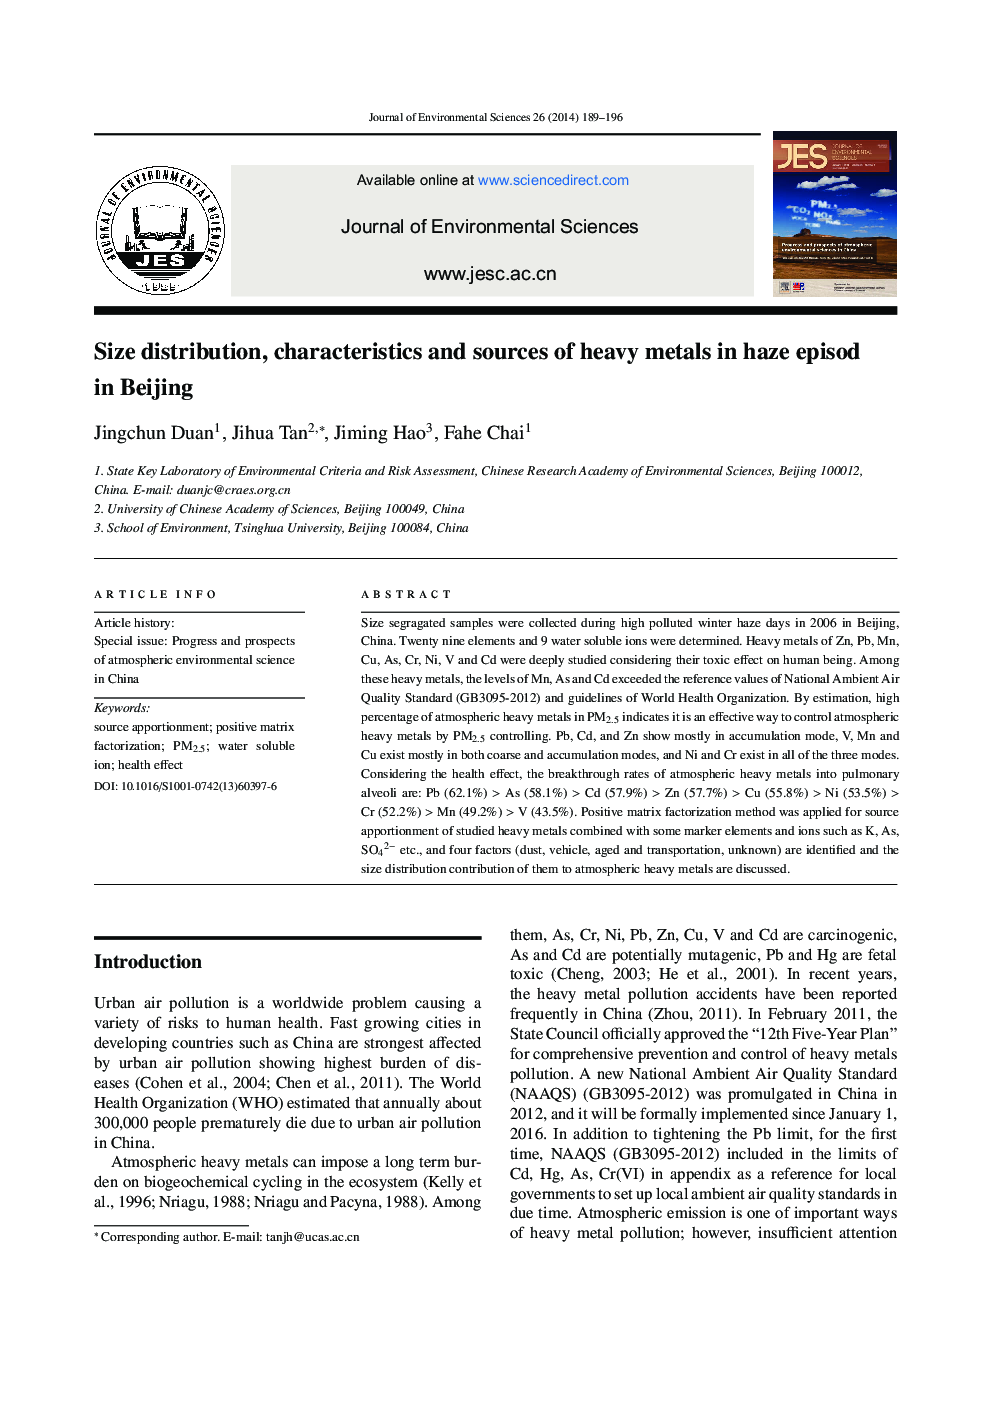 توزیع اندازه، ویژگی ها و منابع فلزات سنگین در اپیزود مومی در پکن 